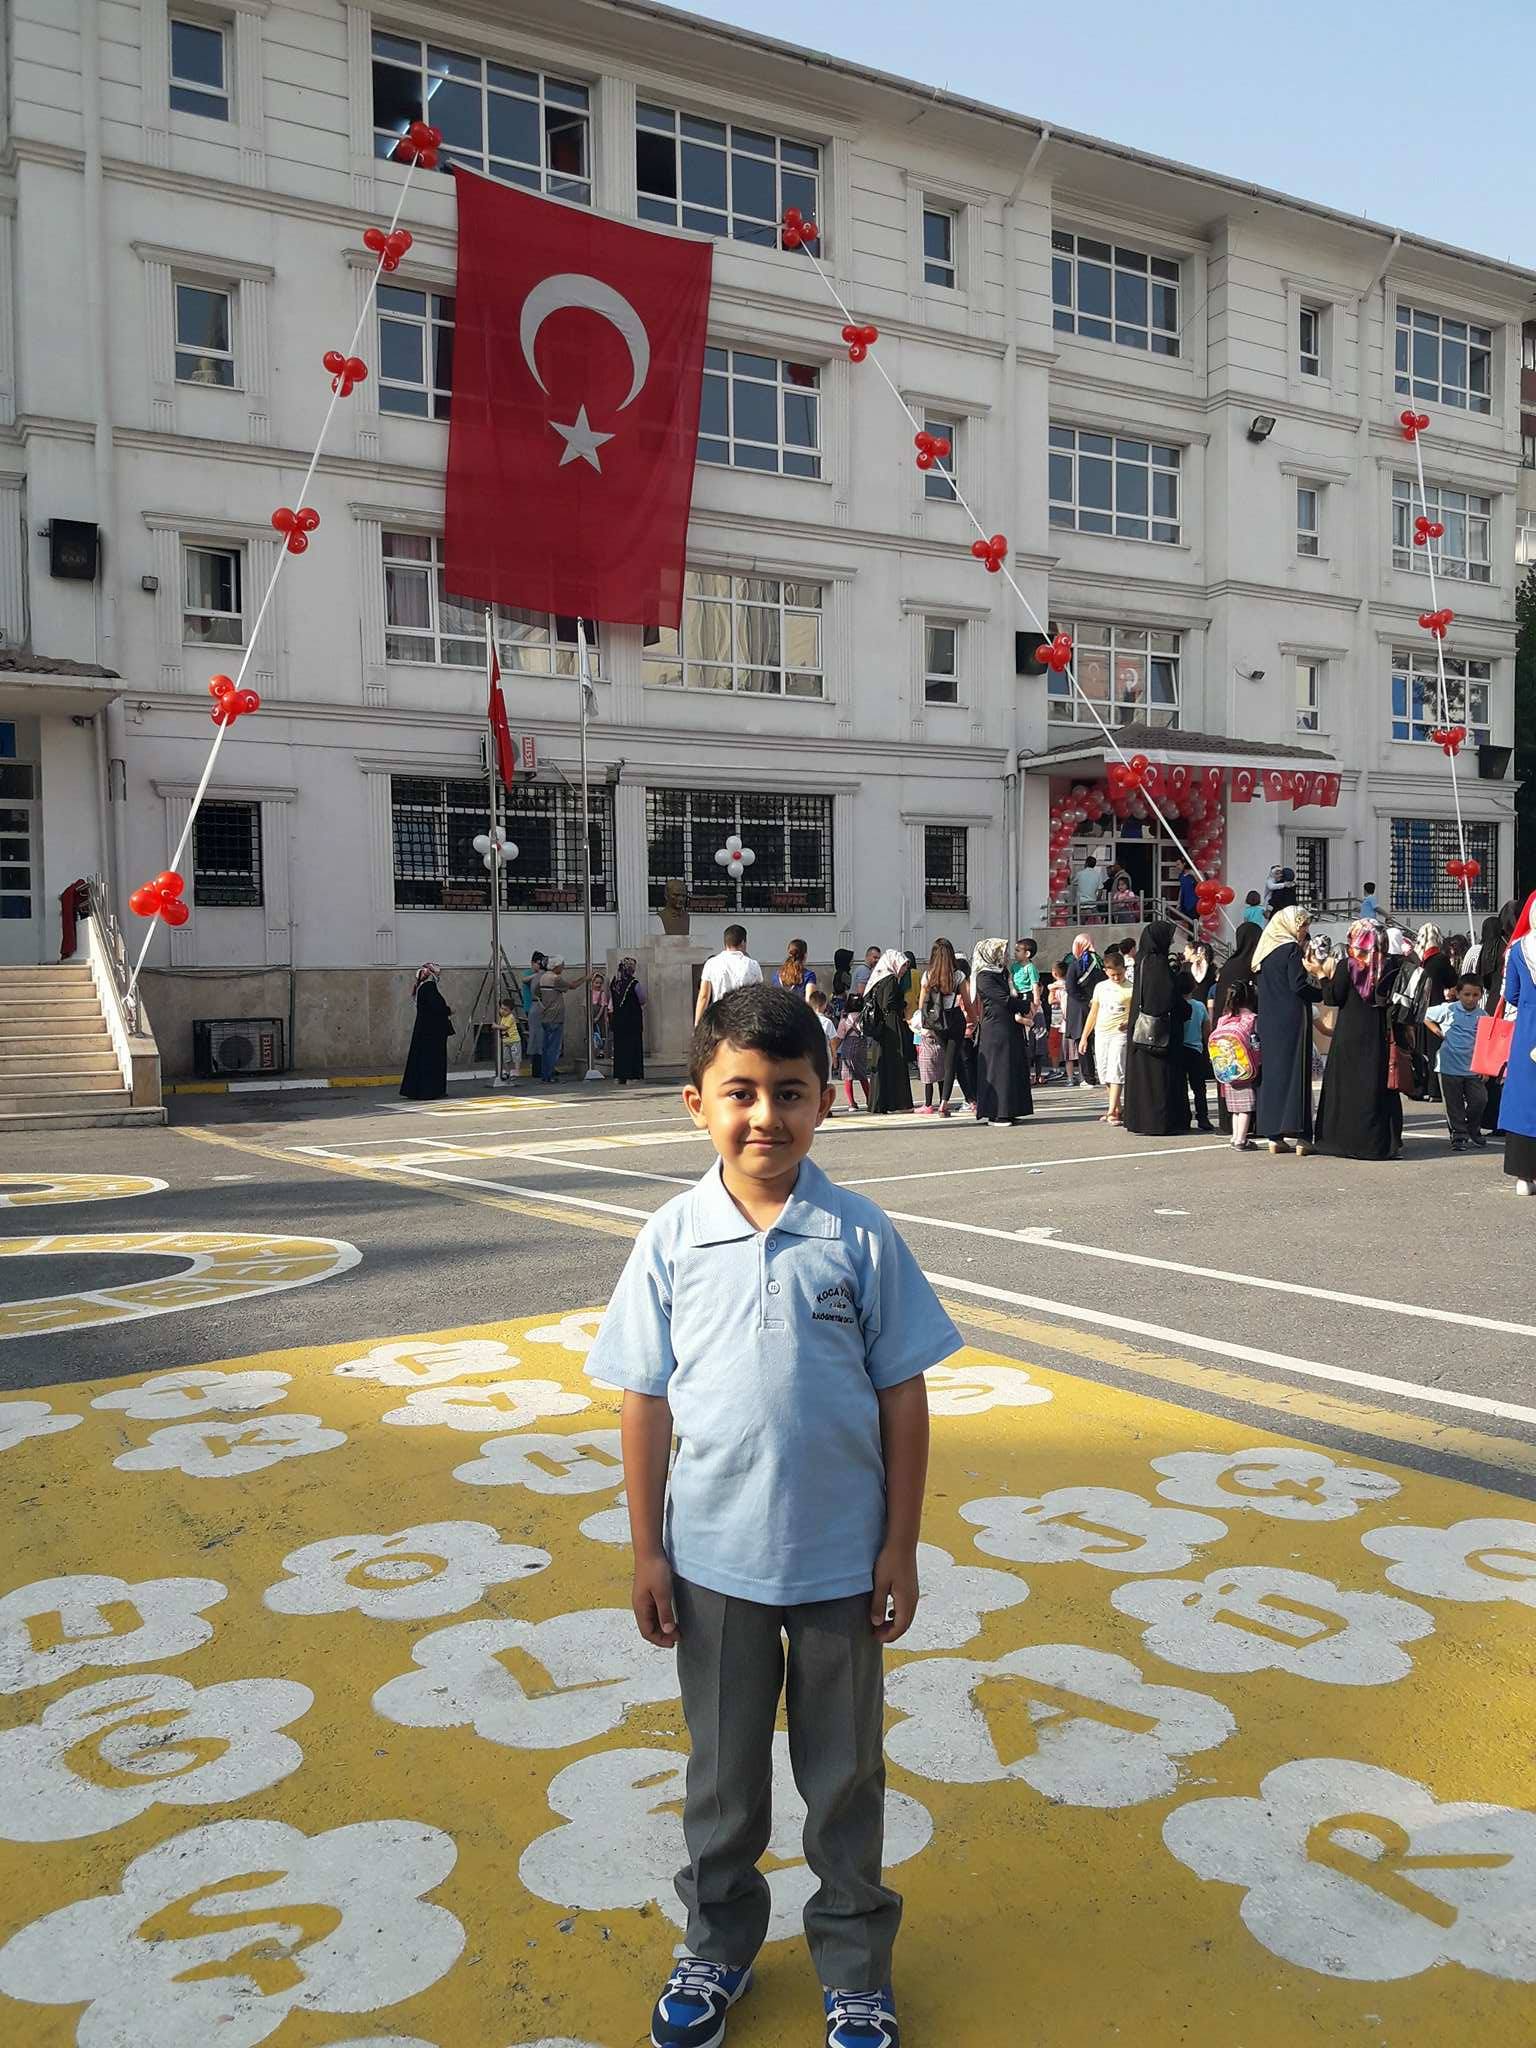 وزارة التربية التركية تكشف موعد بدء الدورات التعويضية لطلاب المدارس تركيا بالعربي